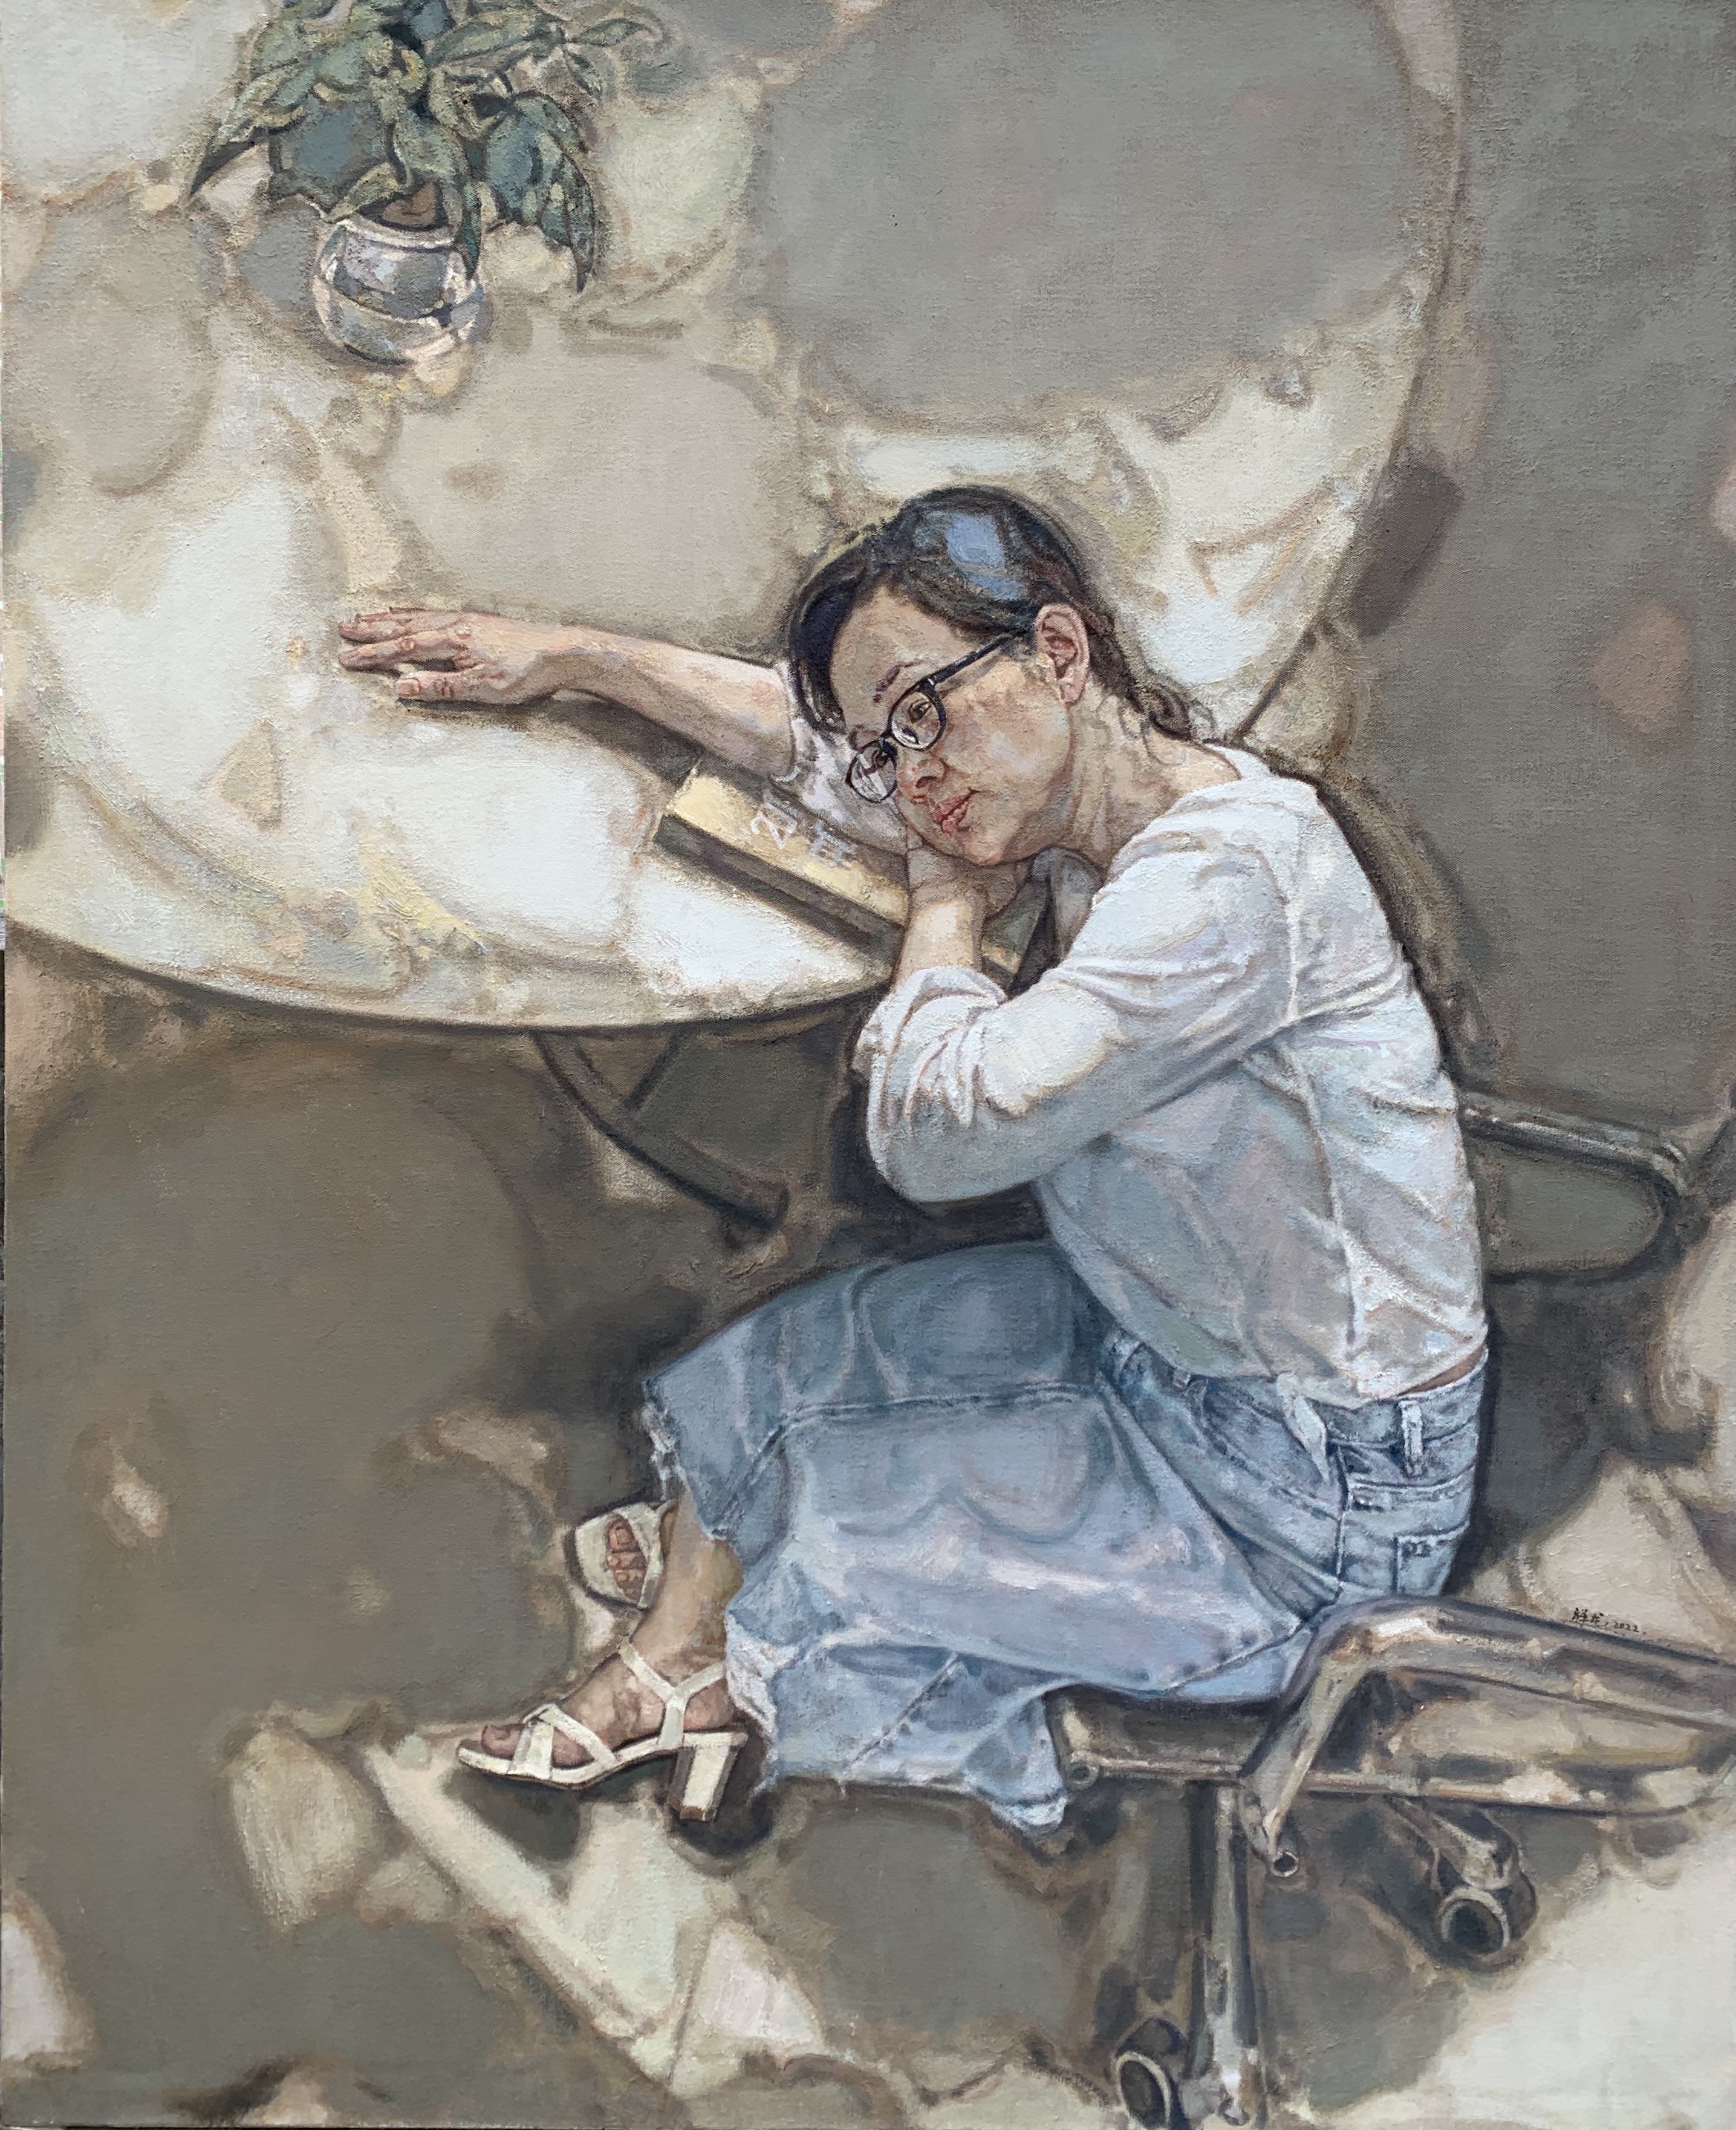 「艺术」画家画妻子——游祥龙油画作品《她》系列